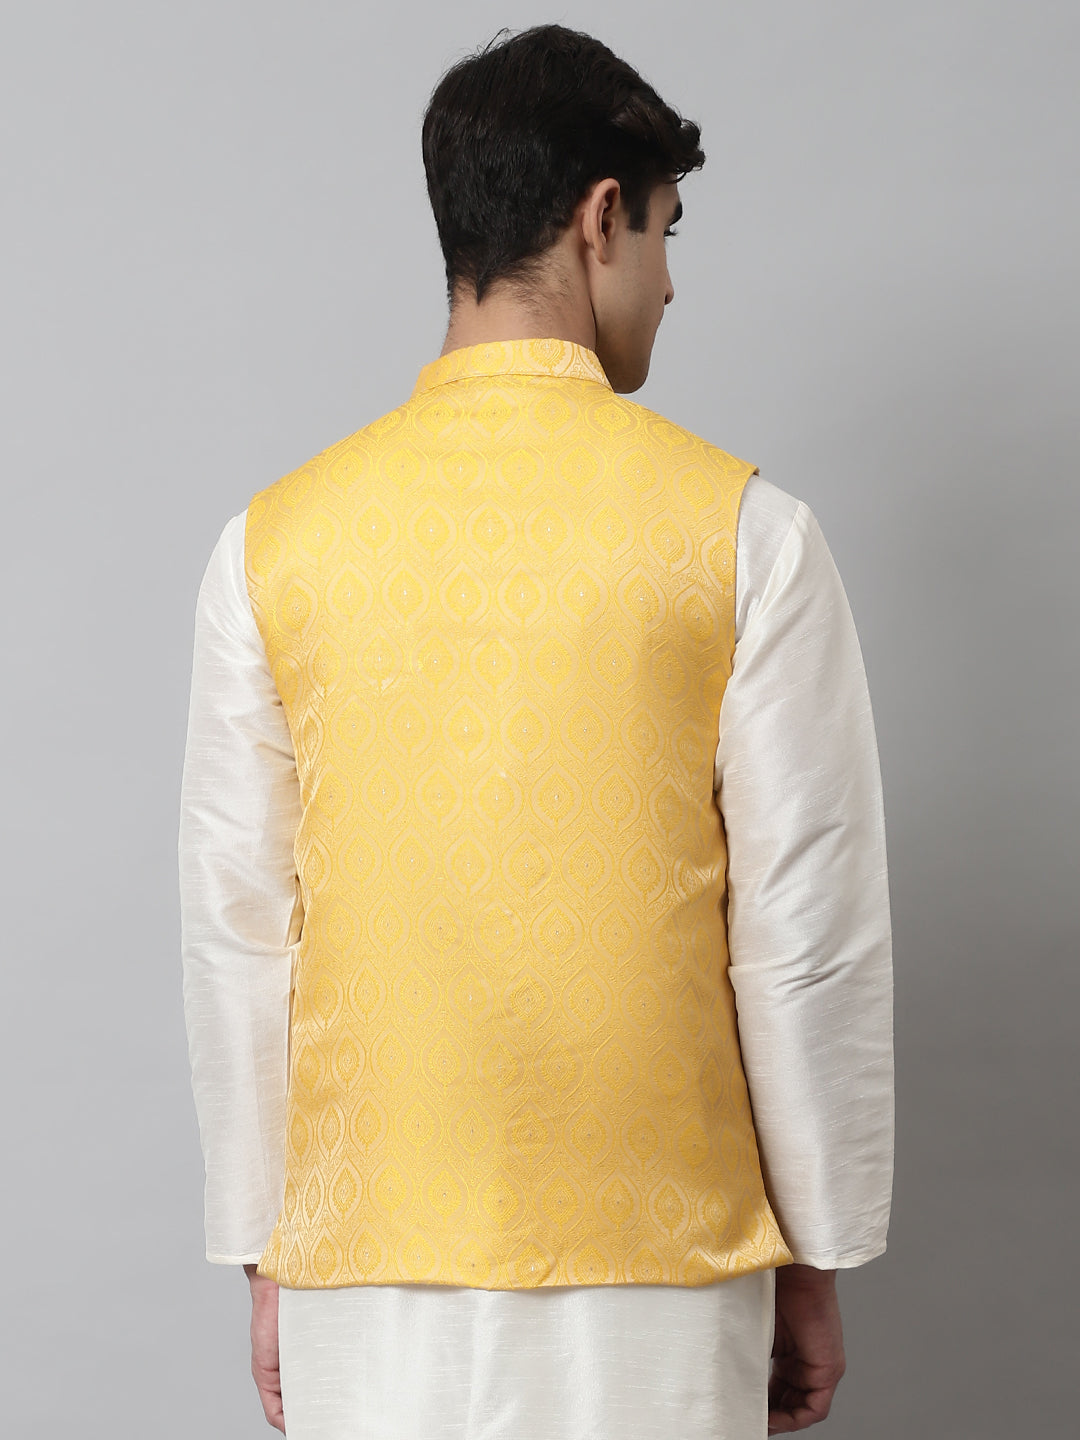 Jompers Men's Yellow Woven Design Waistcoats - Distacart